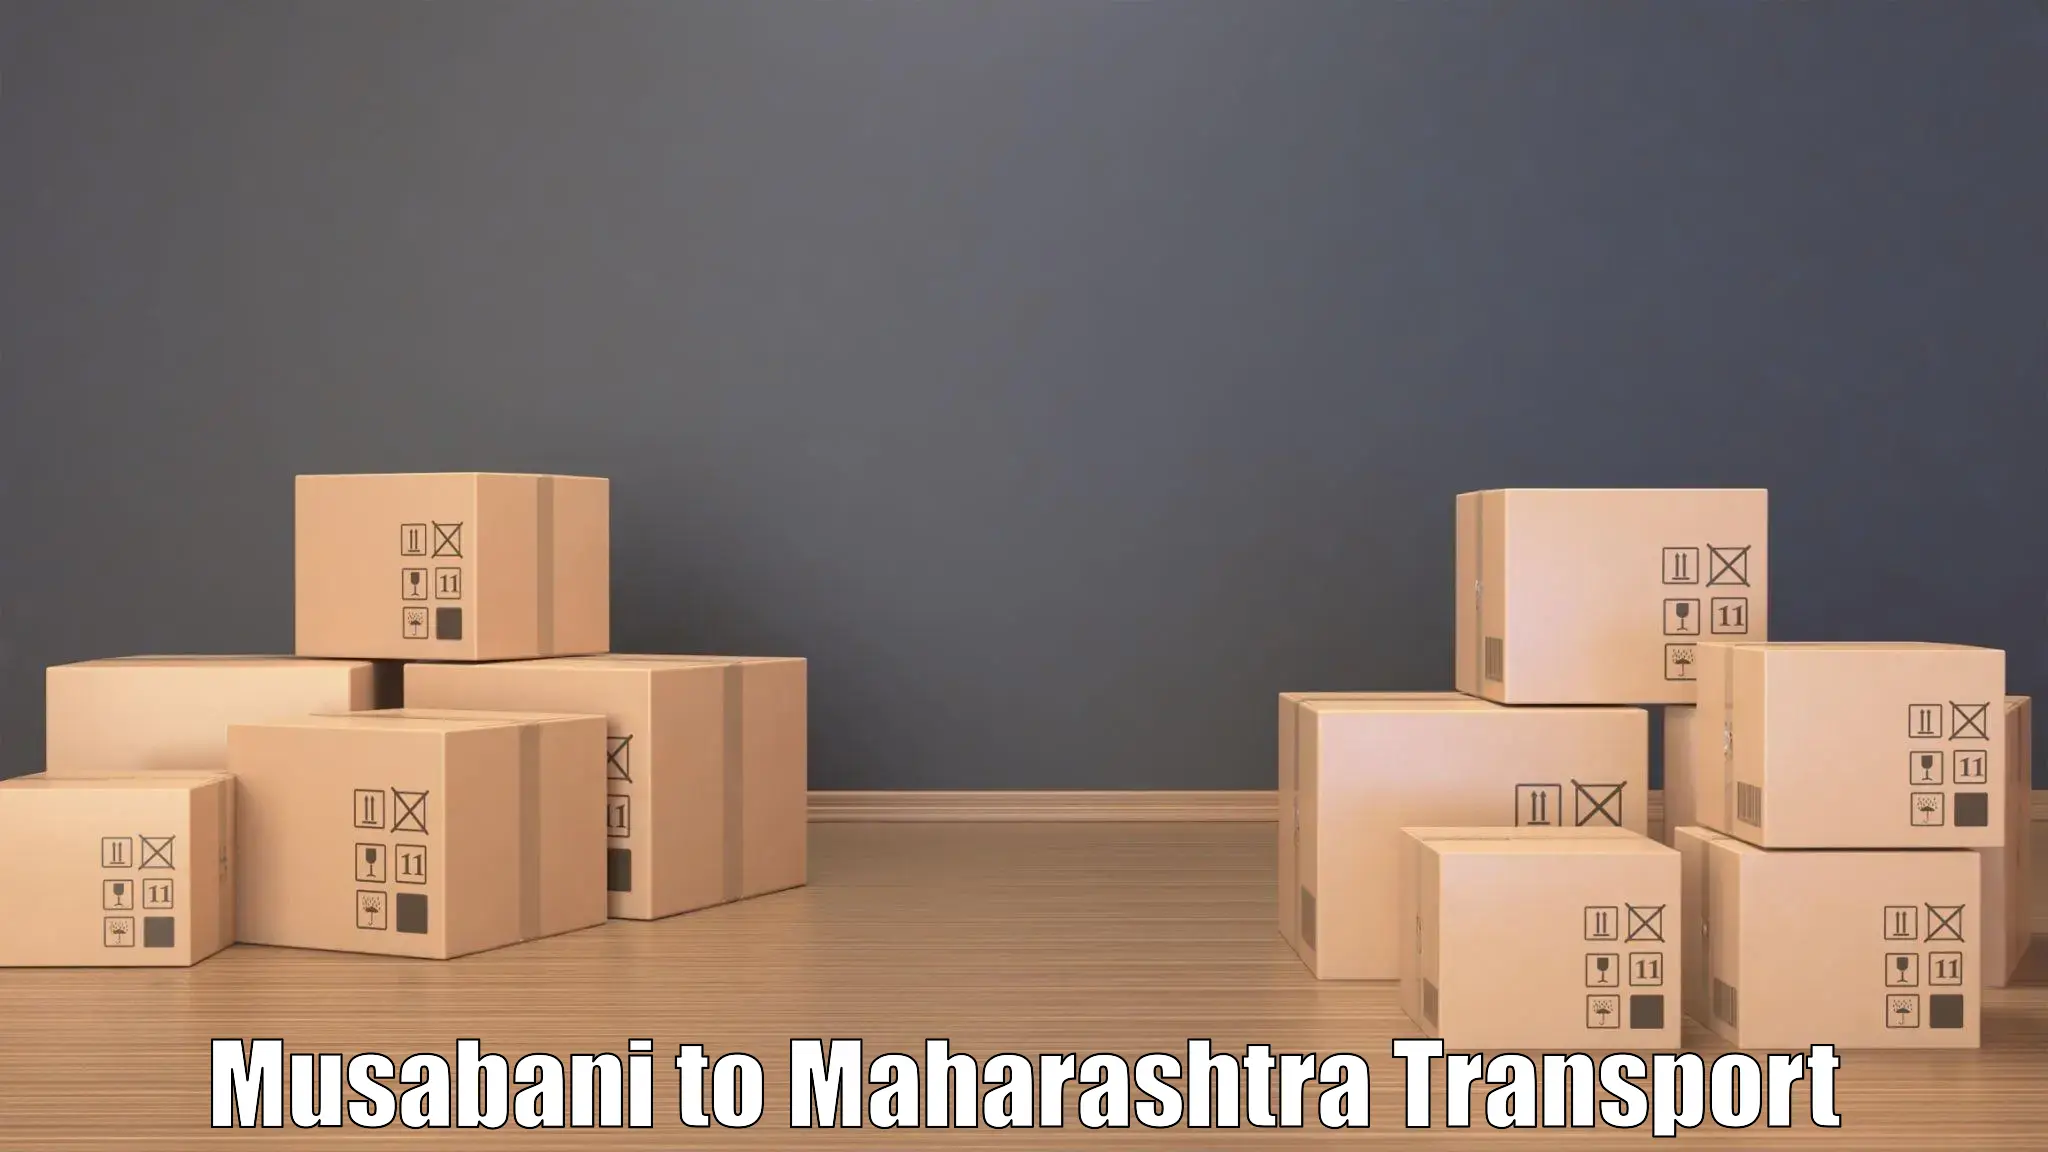 Cargo transport services Musabani to Mahabaleshwar